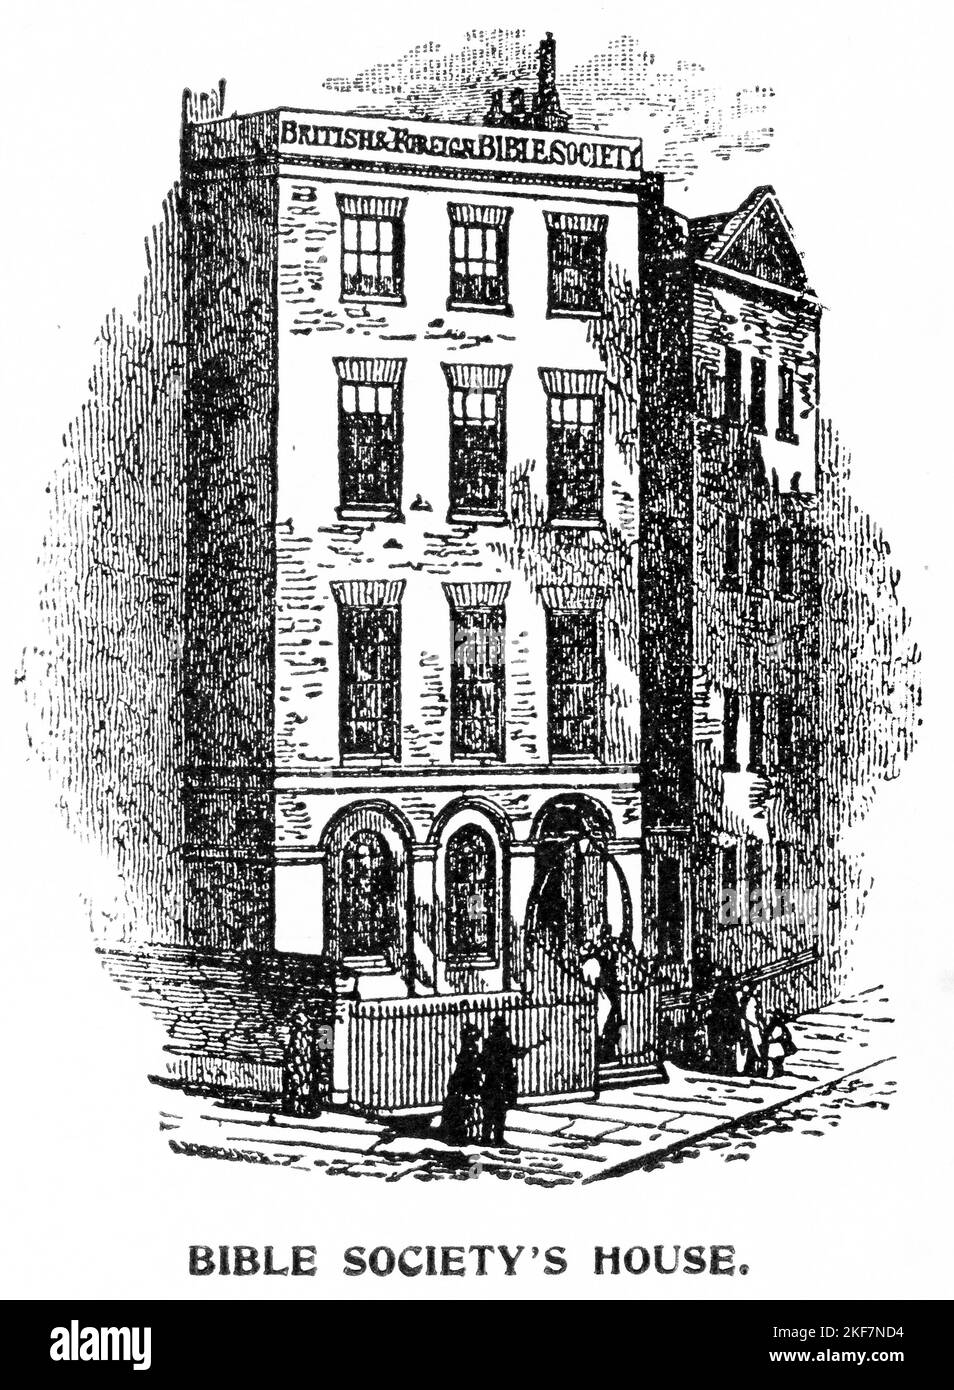 Gravur des Hauptquartiers der britischen und ausländischen Bibelgesellschaft, um 1880 Stockfoto